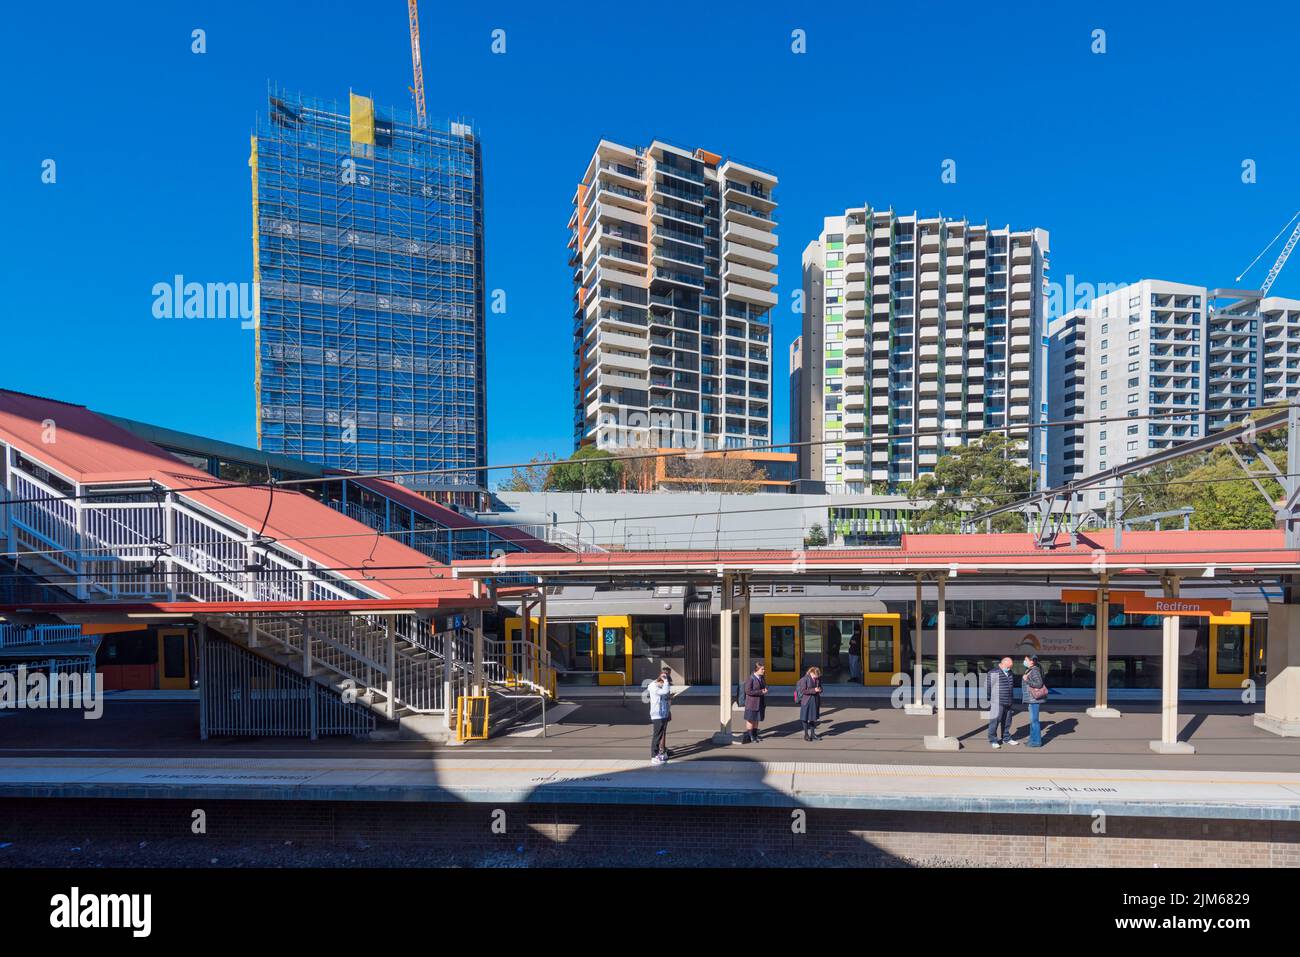 La plataforma de trenes y los nuevos bloques de apartamentos cerca de la estación de tren en el barrio interior de Sydney o Redfern, Nueva Gales del Sur, Australia Foto de stock